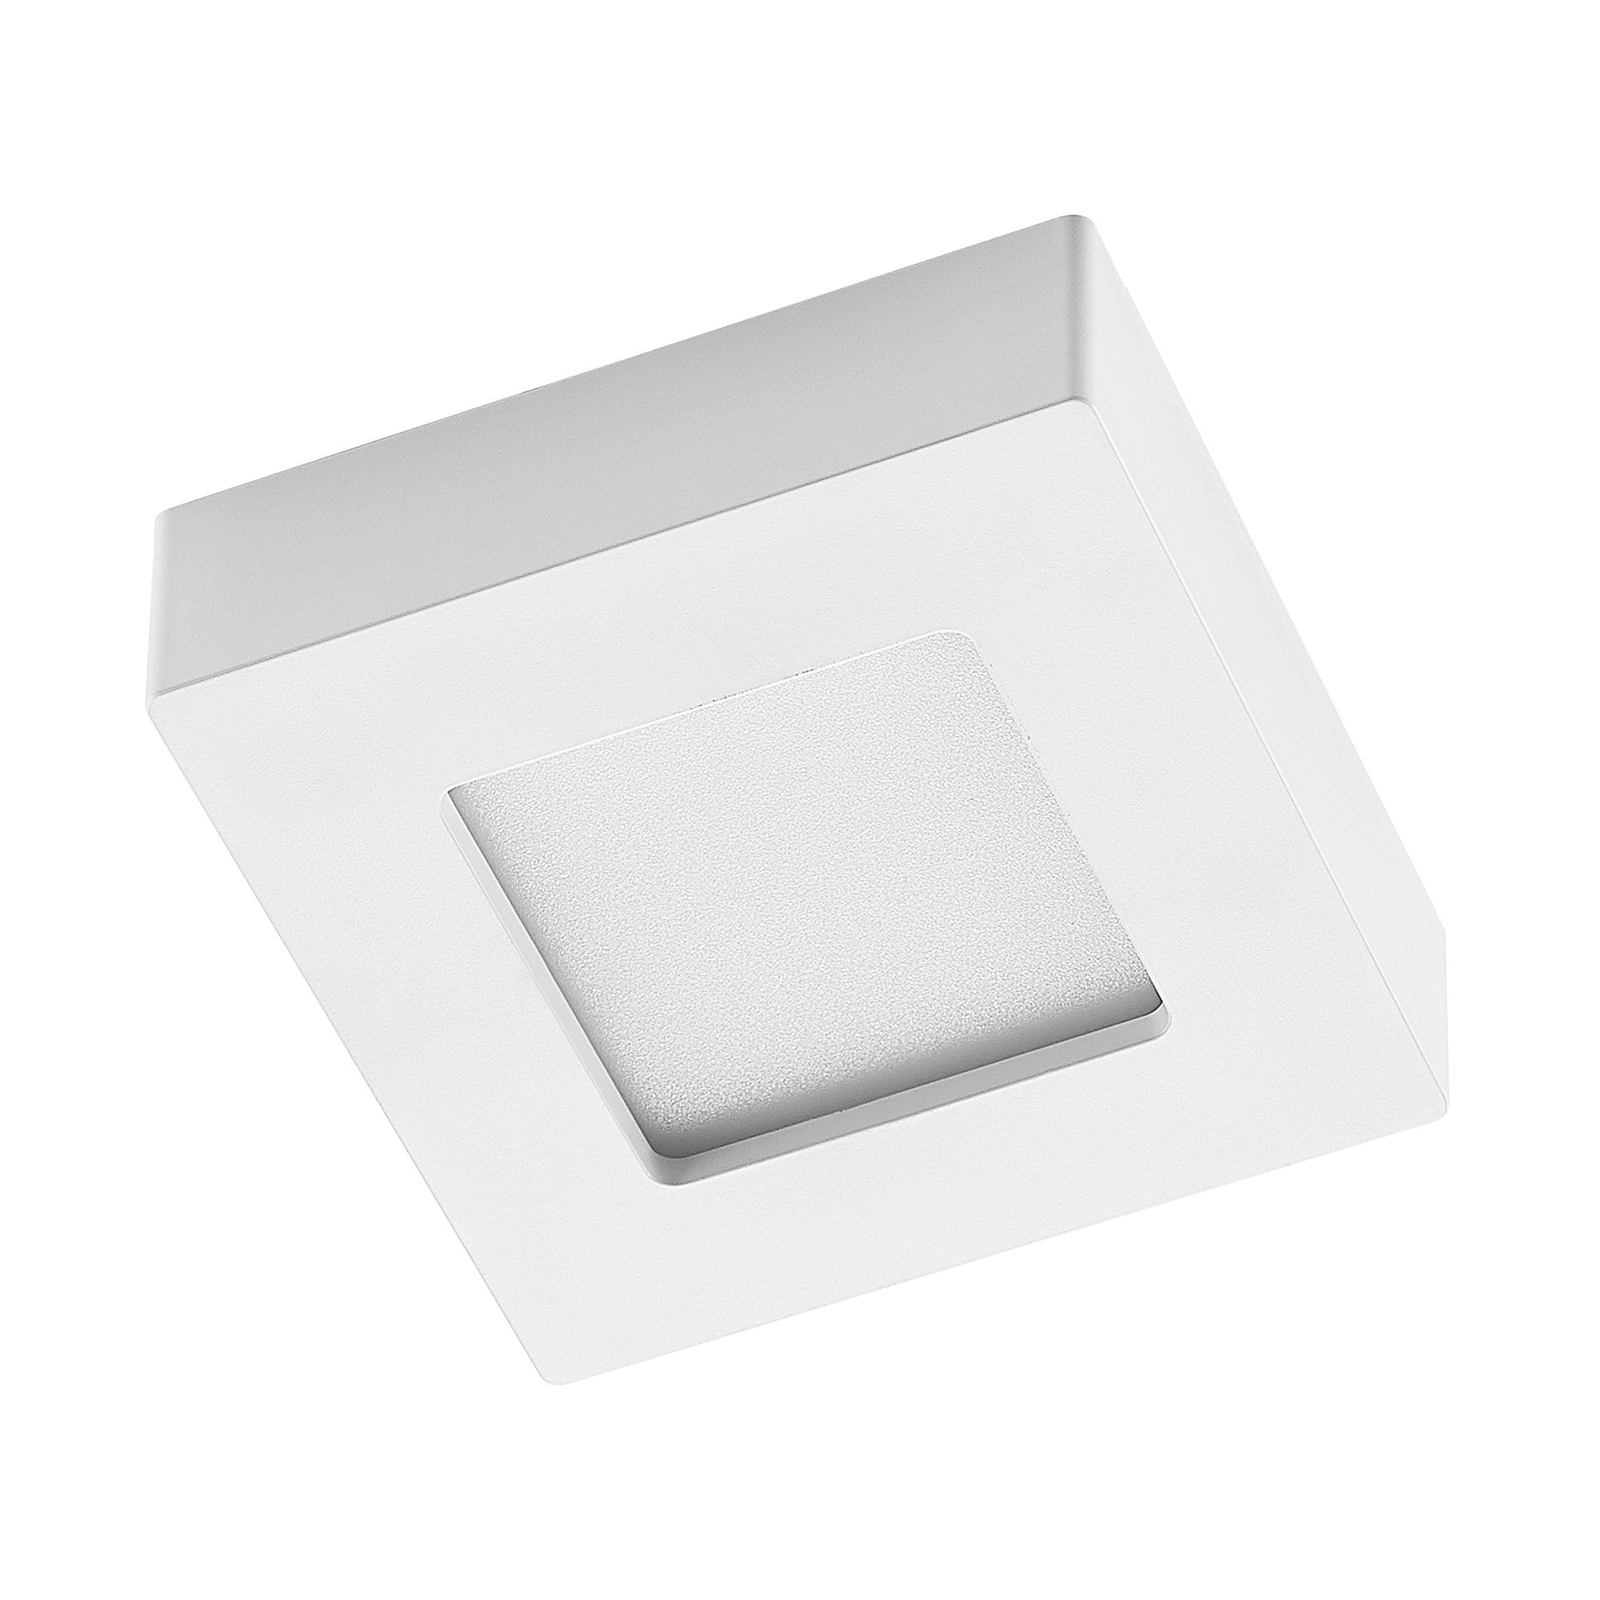 Stropní svítidlo Prios LED Alette, bílé, 12,2 cm, stmívatelné